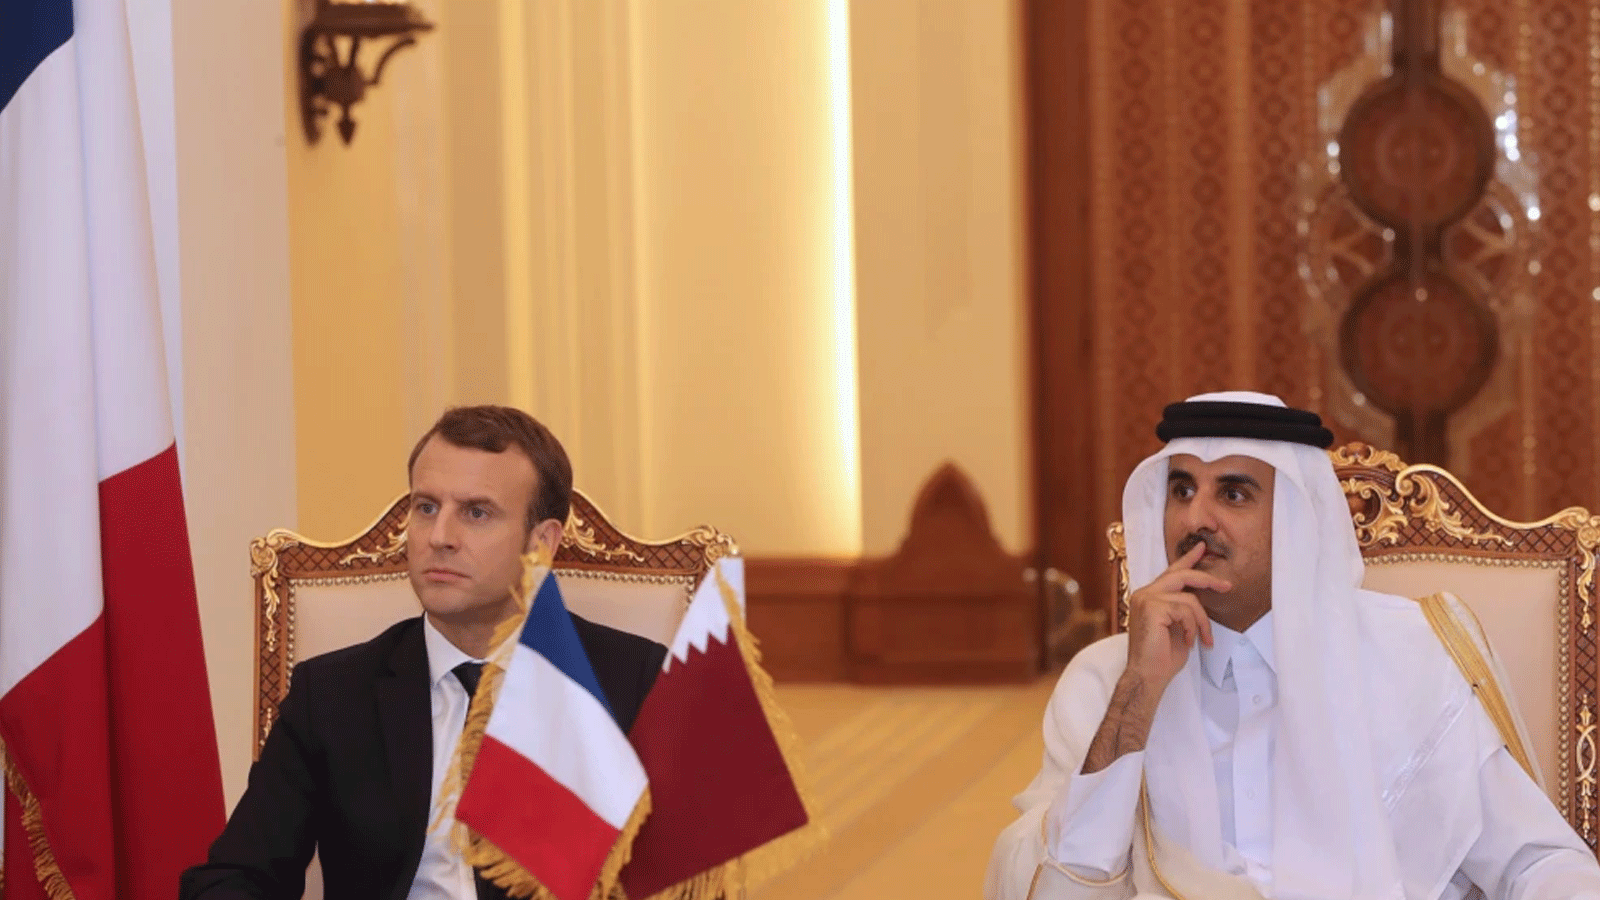 صورة أرشيفية للرئيس الفرنسي إيمانويل ماكرون (إلى اليسار) وأمير قطر الشيخ تميم بن حمد آل ثاني (إلى اليمين) يشاهدان وزيري خارجيتهما يوقعان الاتفاقيات الثنائية في العاصمة الدوحة. 7 كانون الأول\ ديسمبر 2017